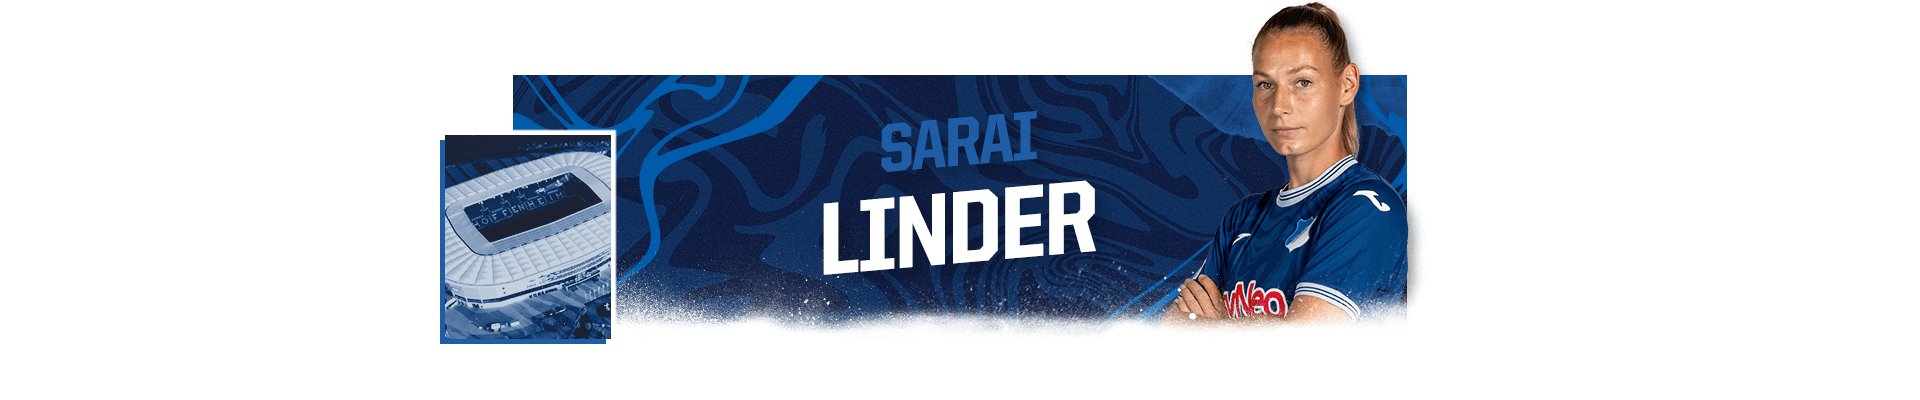 Header_SBP_22-Linder.png